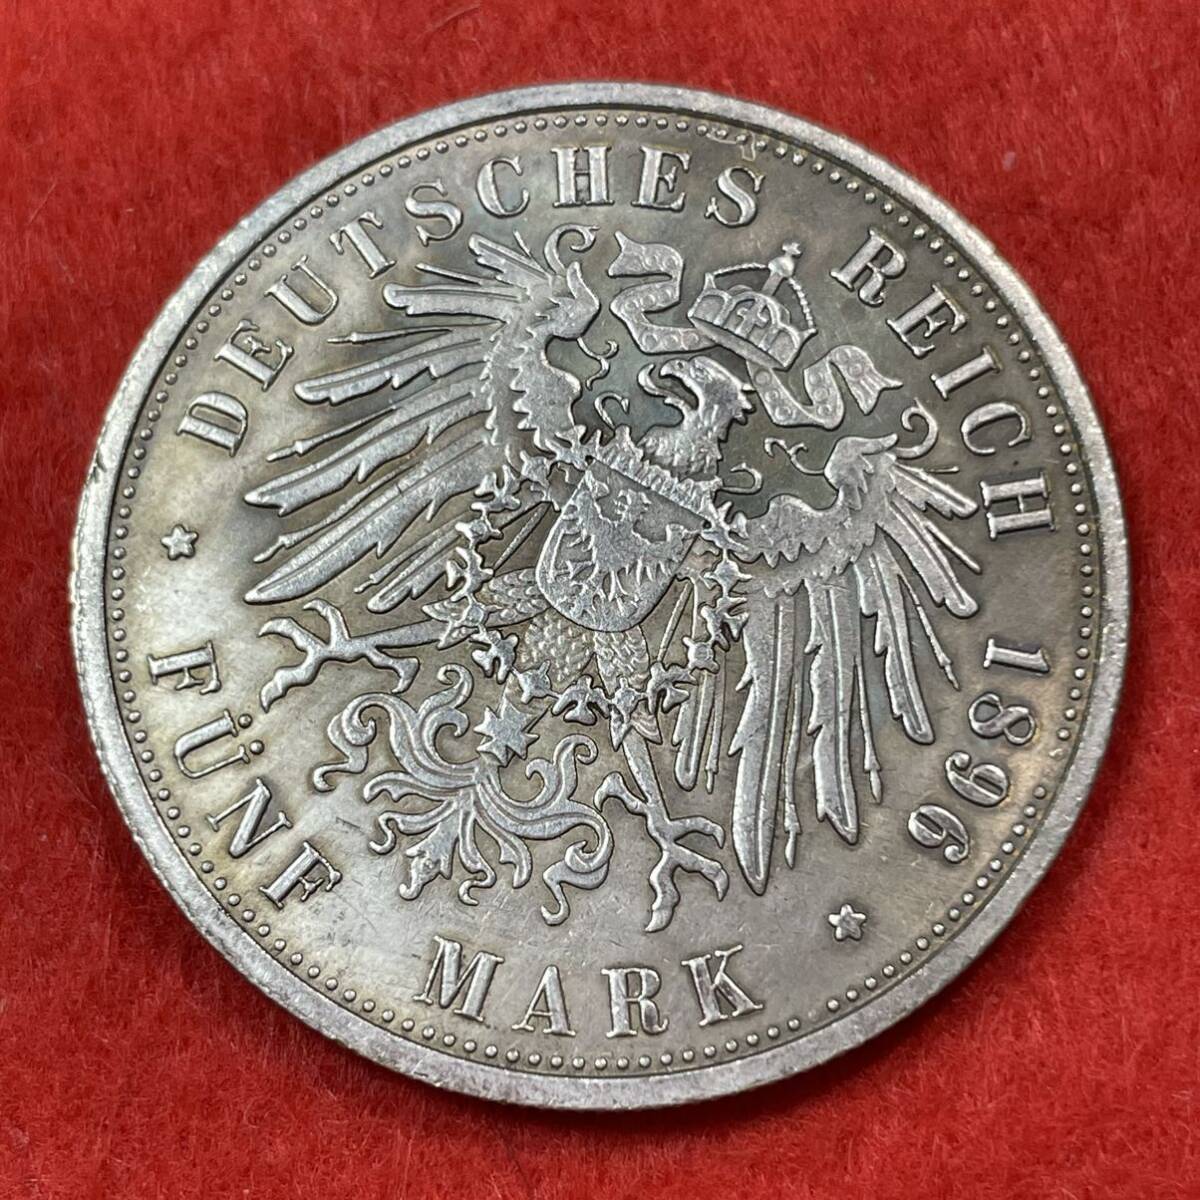 ドイツ 硬貨 古銭 ハンブルク州 1896年 ハンブルク州紋章 キャット・キャッスル マルク 国章 双頭の鷲 コイン 重20.48g 銀貨 _画像2